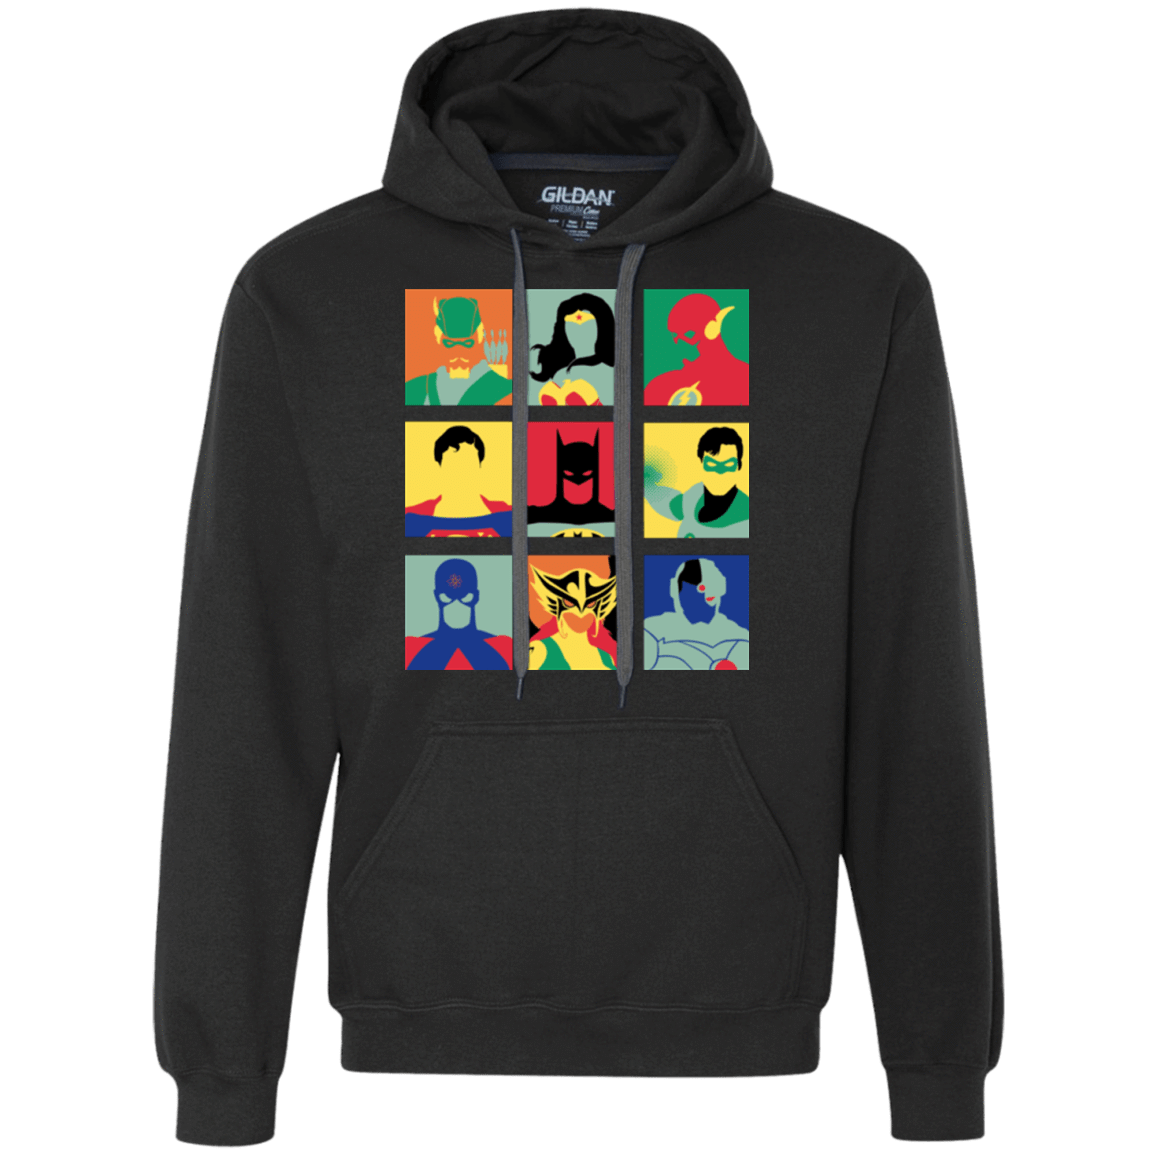 Sweatshirts Black / Small Justice Pop Premium Fleece Hoodie